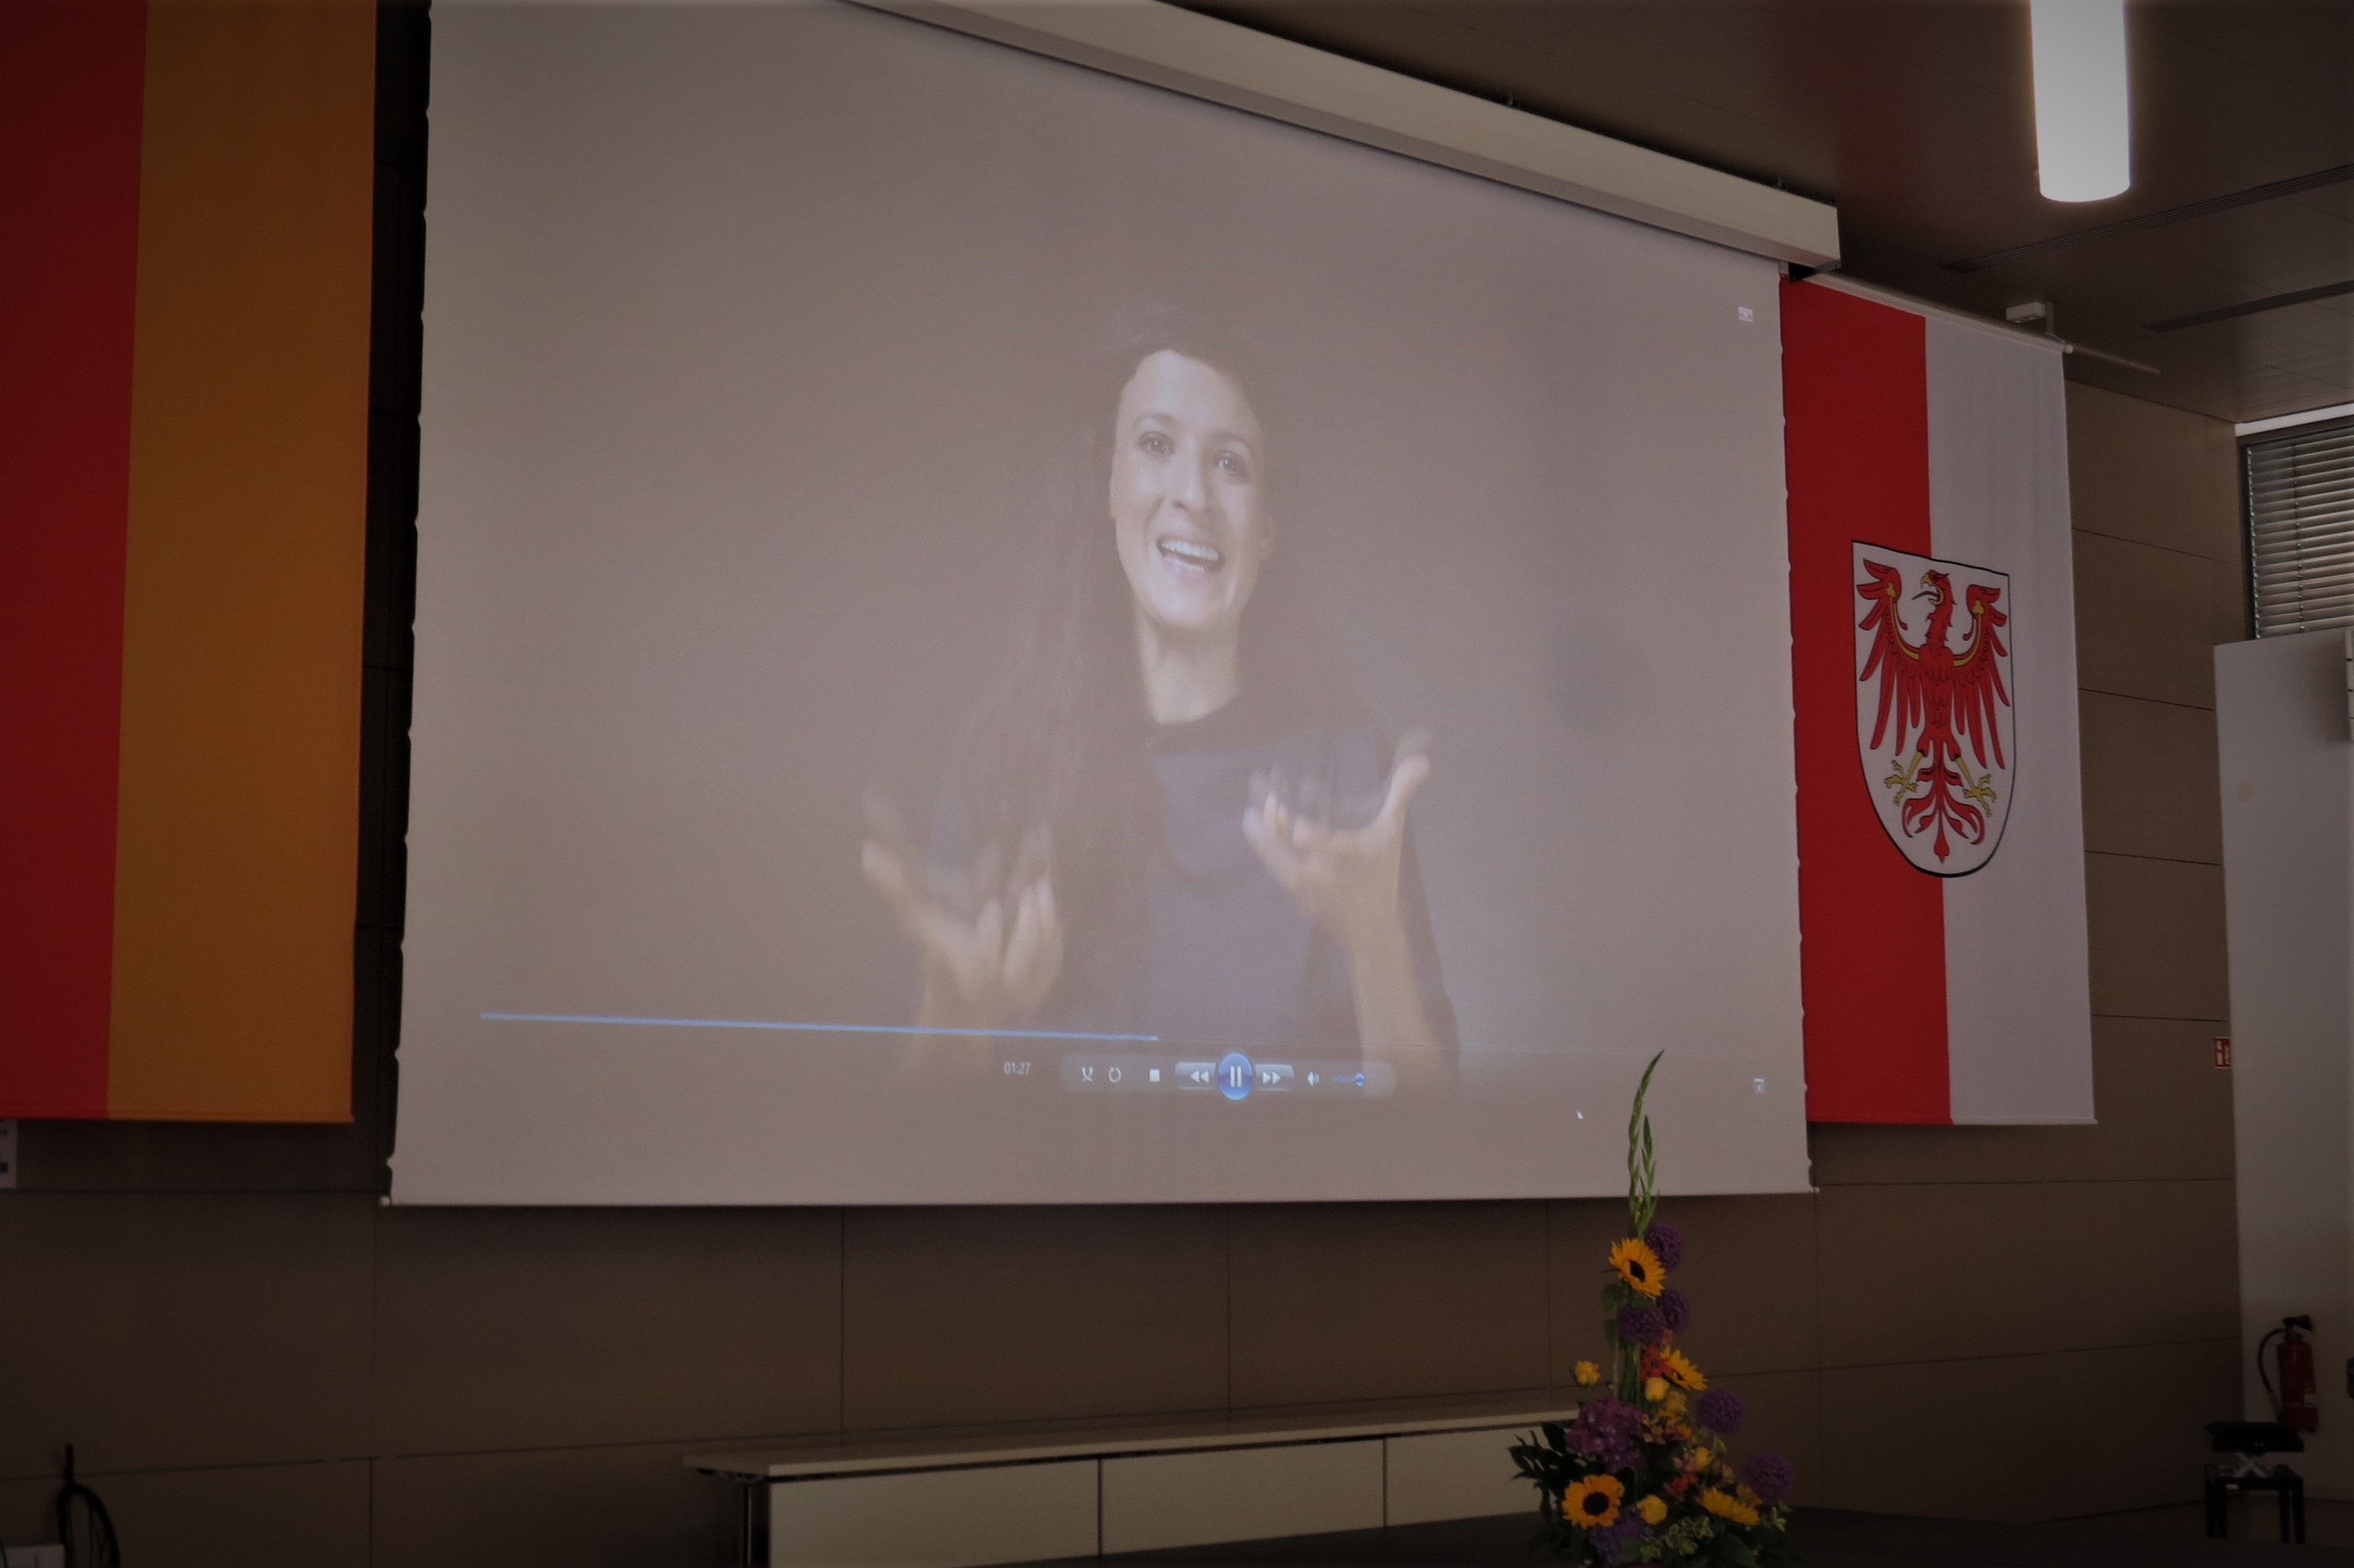 Übertragung der Poetry-Slam-Gewinnerin und Schauspielerin Dominique Macri über den Bildschirm